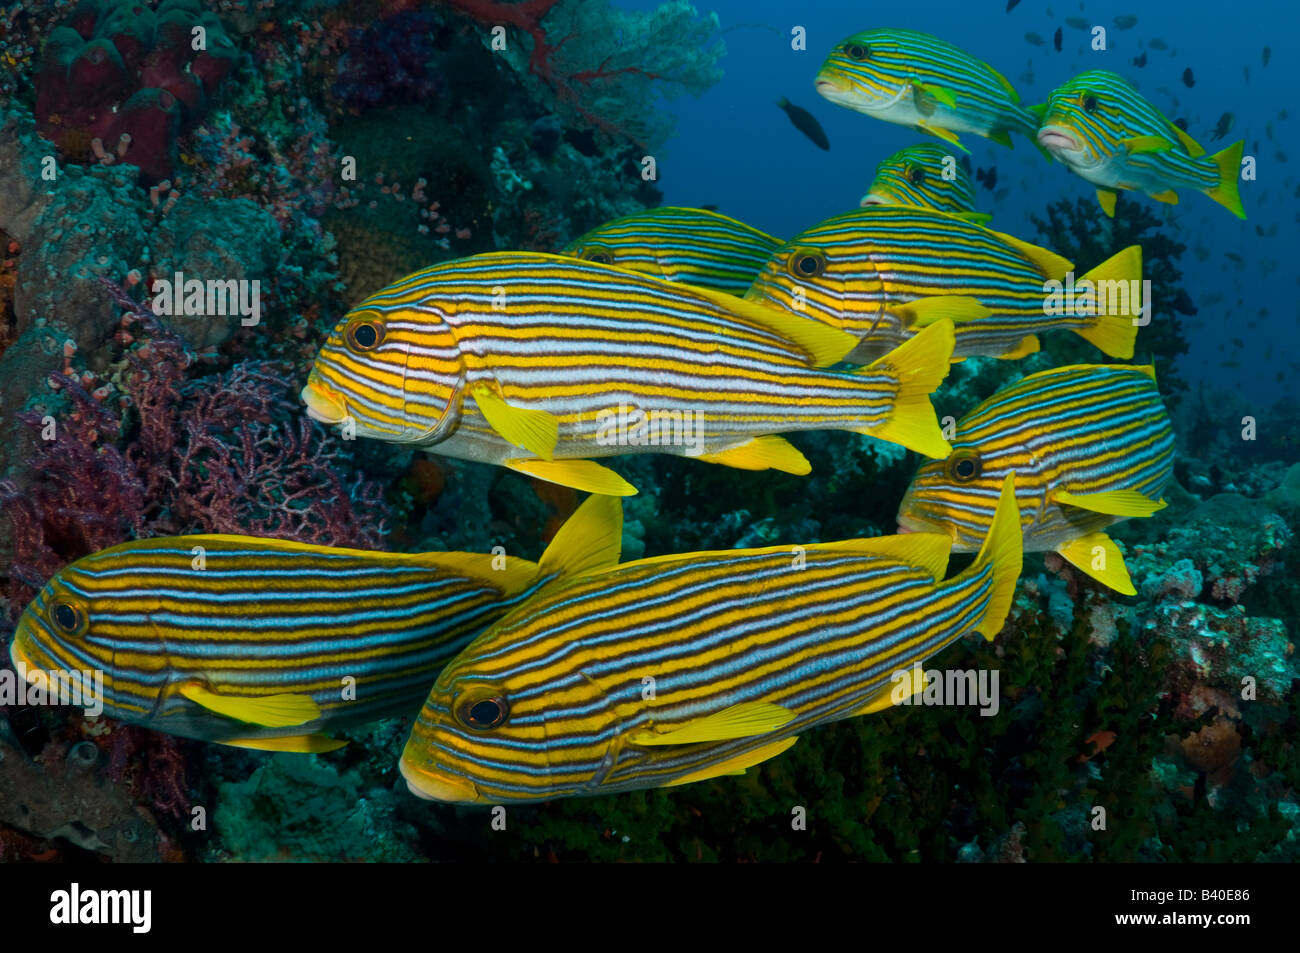 Les récifs coralliens dans le Parc National de Komodo Komodo en Indonésie montrant une école de gaterins rayés Plectorhynchus polytaenia Banque D'Images